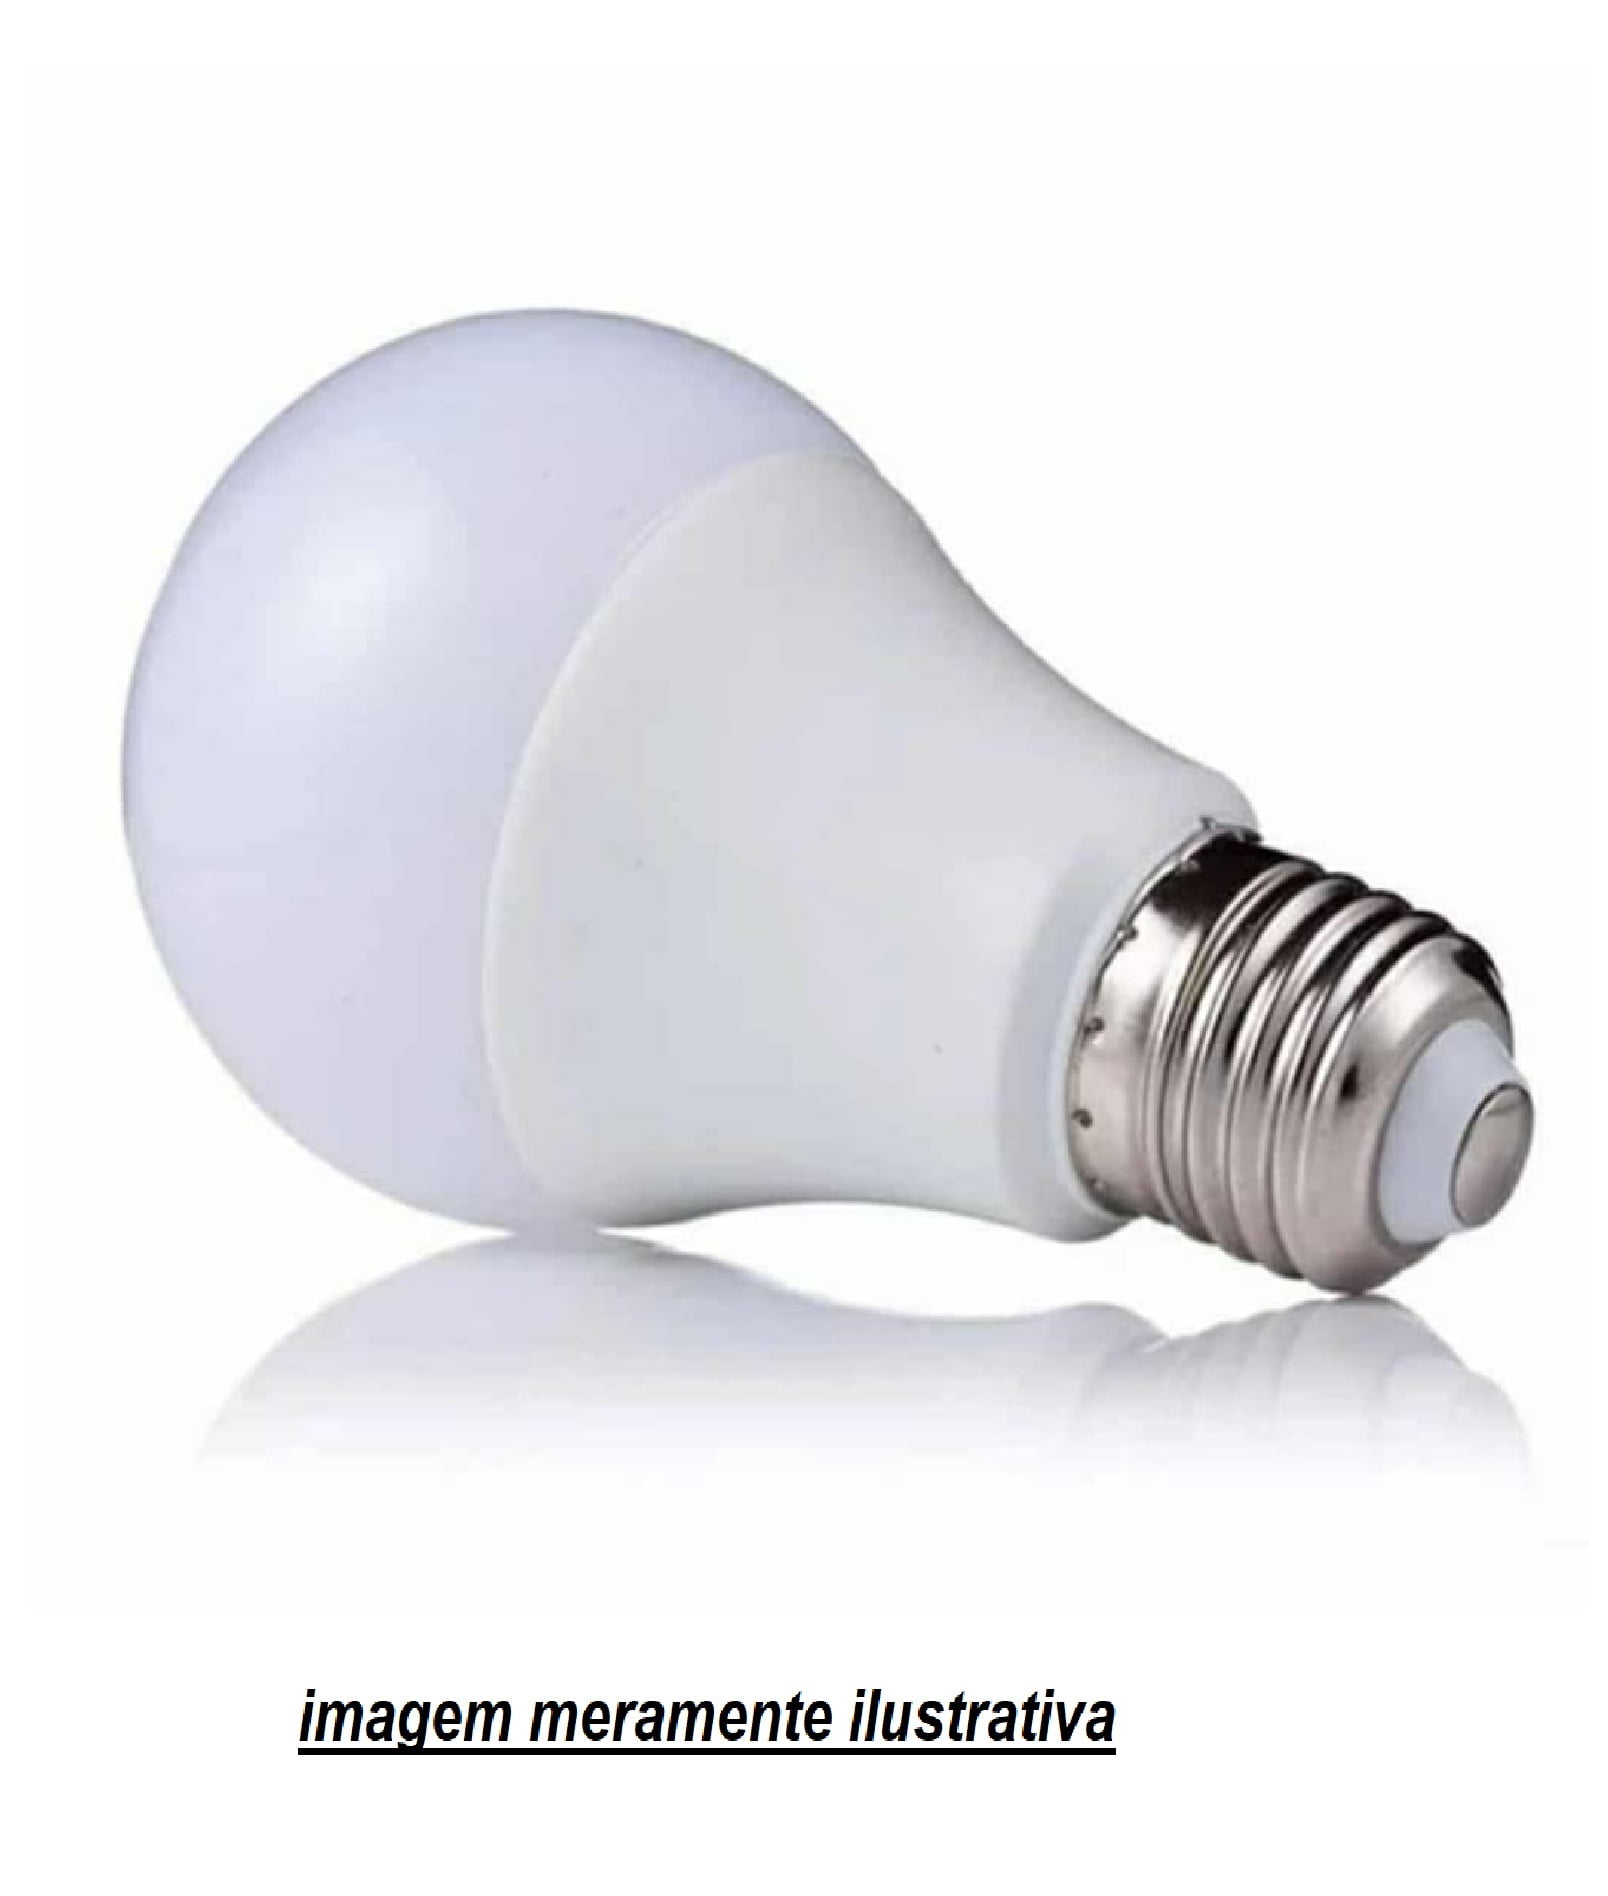 200 Lâmpadas  Bulbo De LED 4.8W Bivolt Econômica 6500K Branco Quente E27 